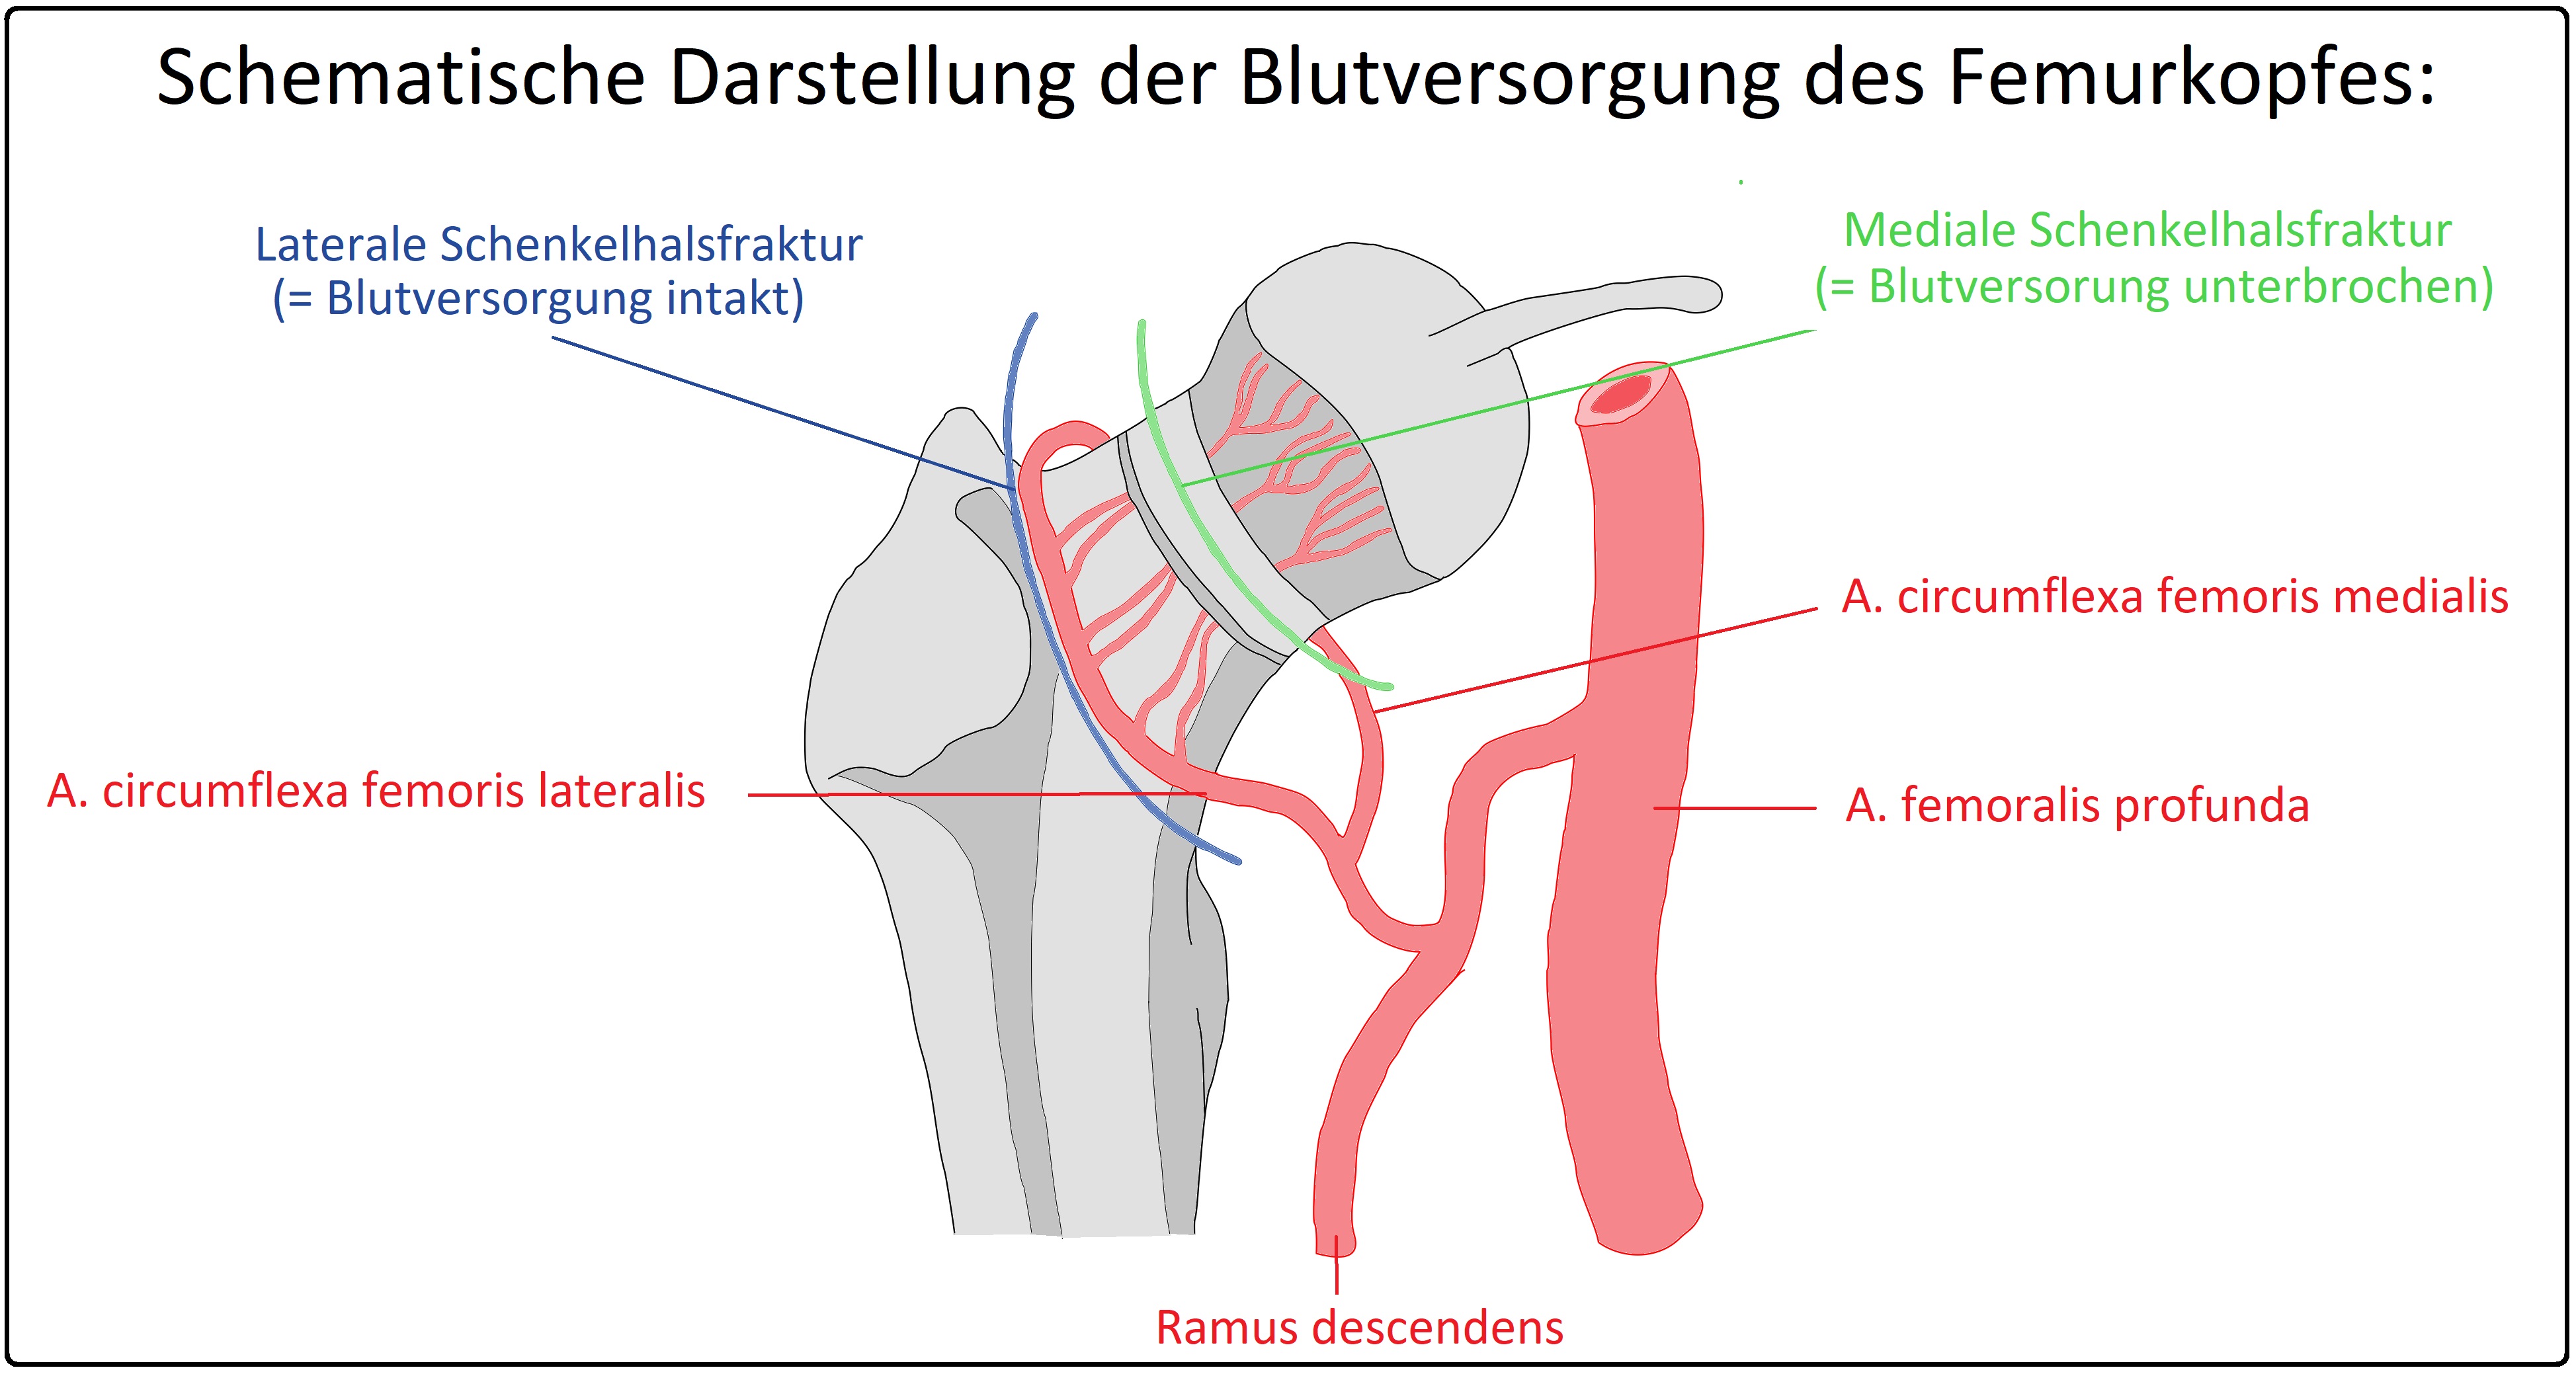 Schematische Darstellung der Blutversorgung des Femurkopfes